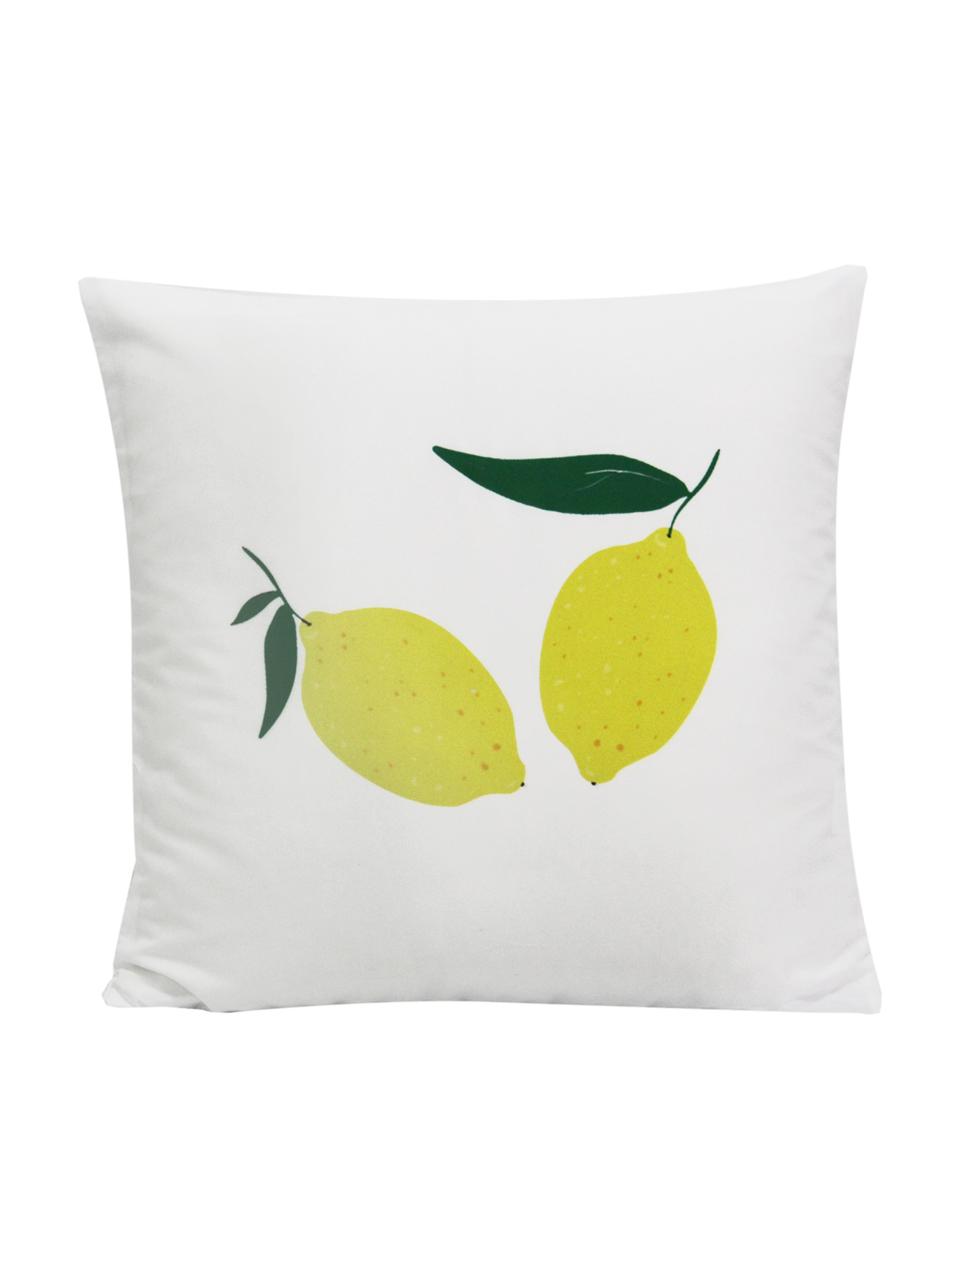 Dubbelzijdige kussenhoes Lemon, Polyester, Wit, geel, groen, 45 x 45 cm